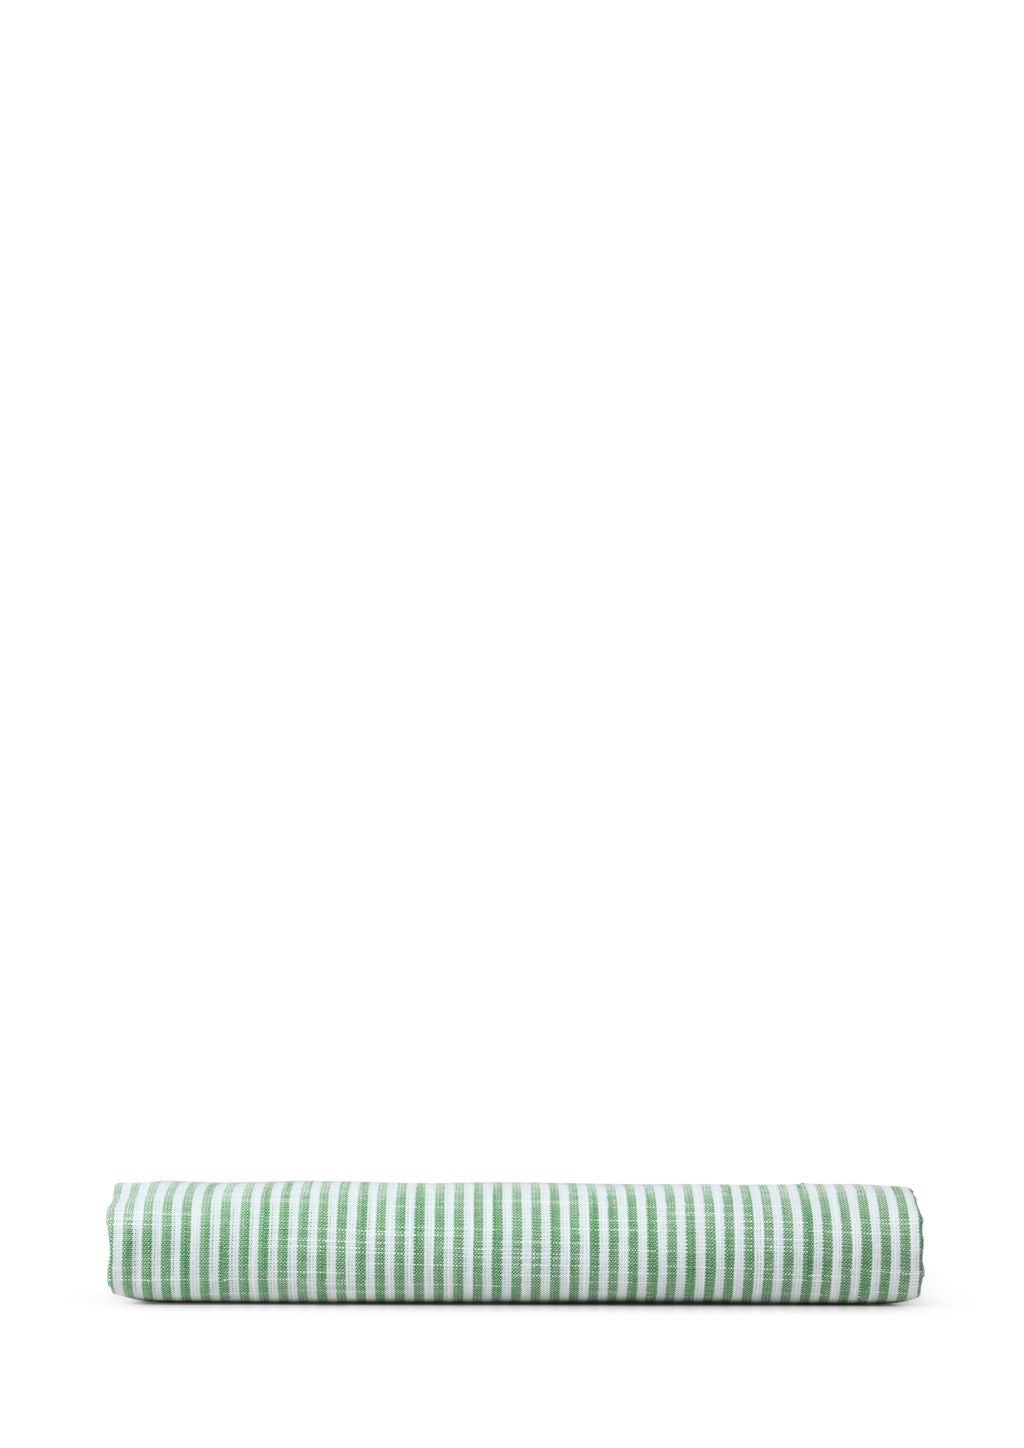 Polštář Juna Monochrome Lines 63 x60 cm, zelená/bílá